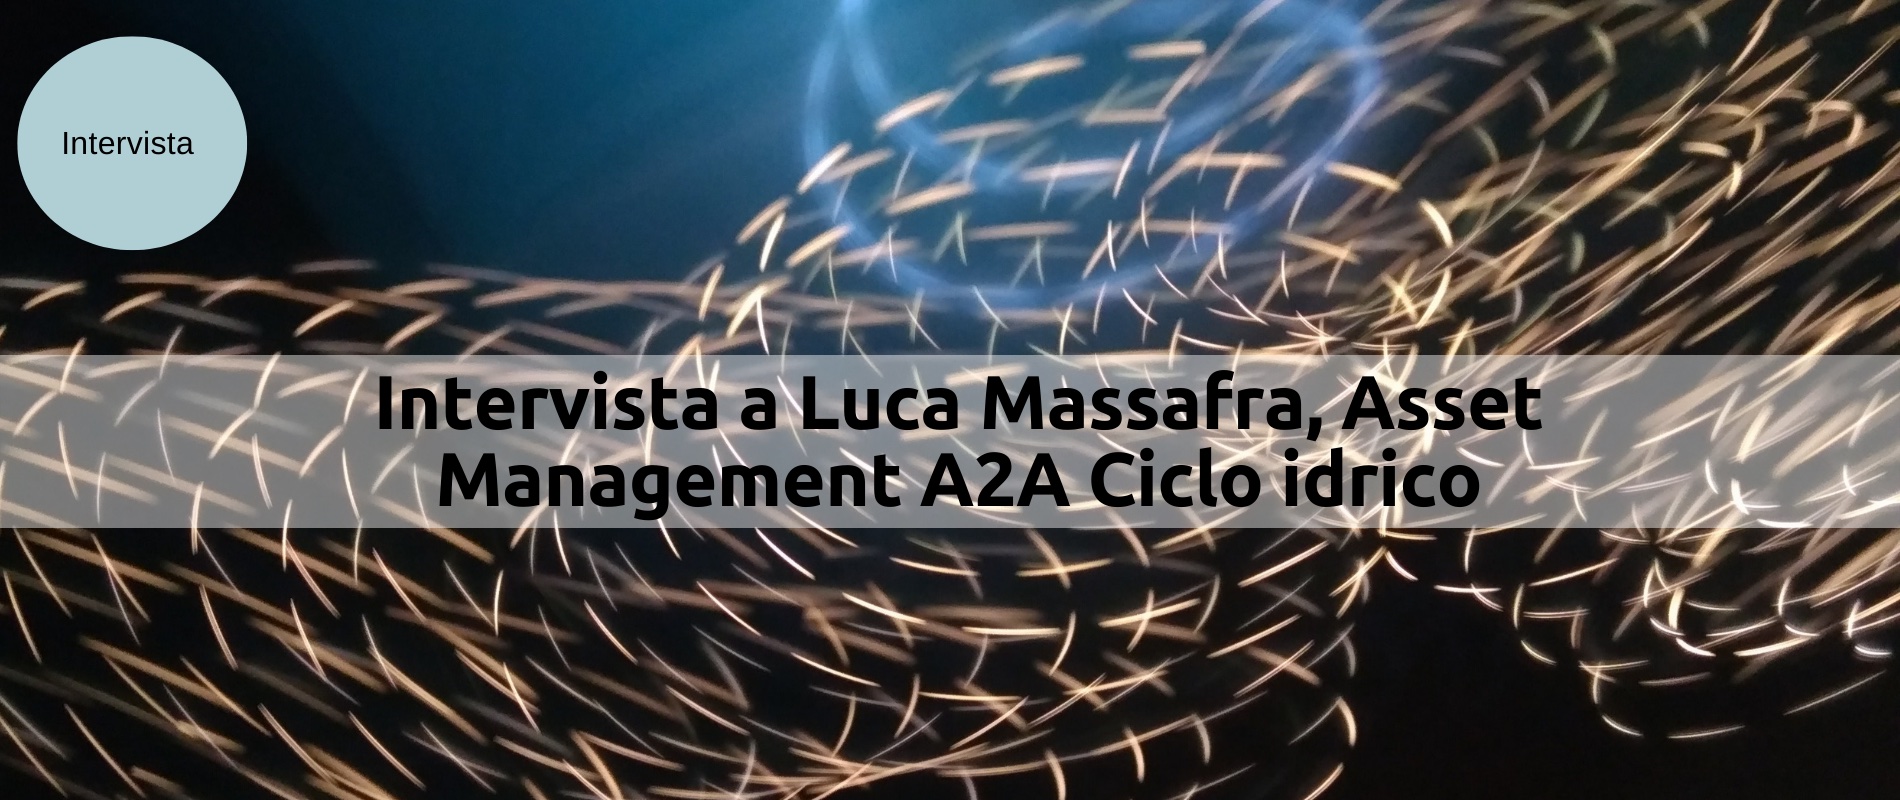 Intervista a Luca Massafra, Asset Management A2A Ciclo idrico